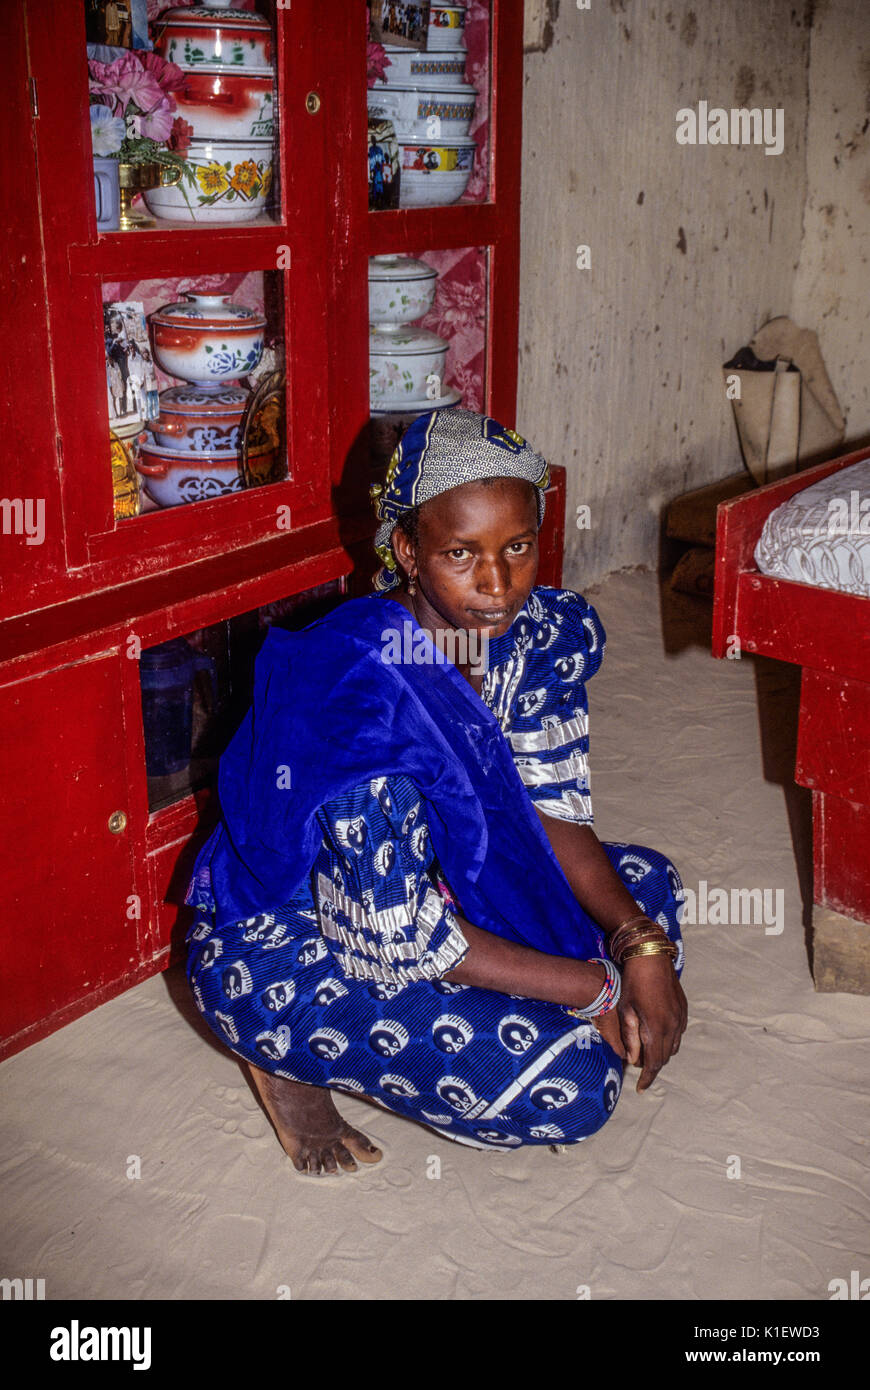 Le Niger, Afrique de l'Ouest. Femme peule dans sa maison. Ustensiles de service en armoire, du sable sur le sol. Banque D'Images